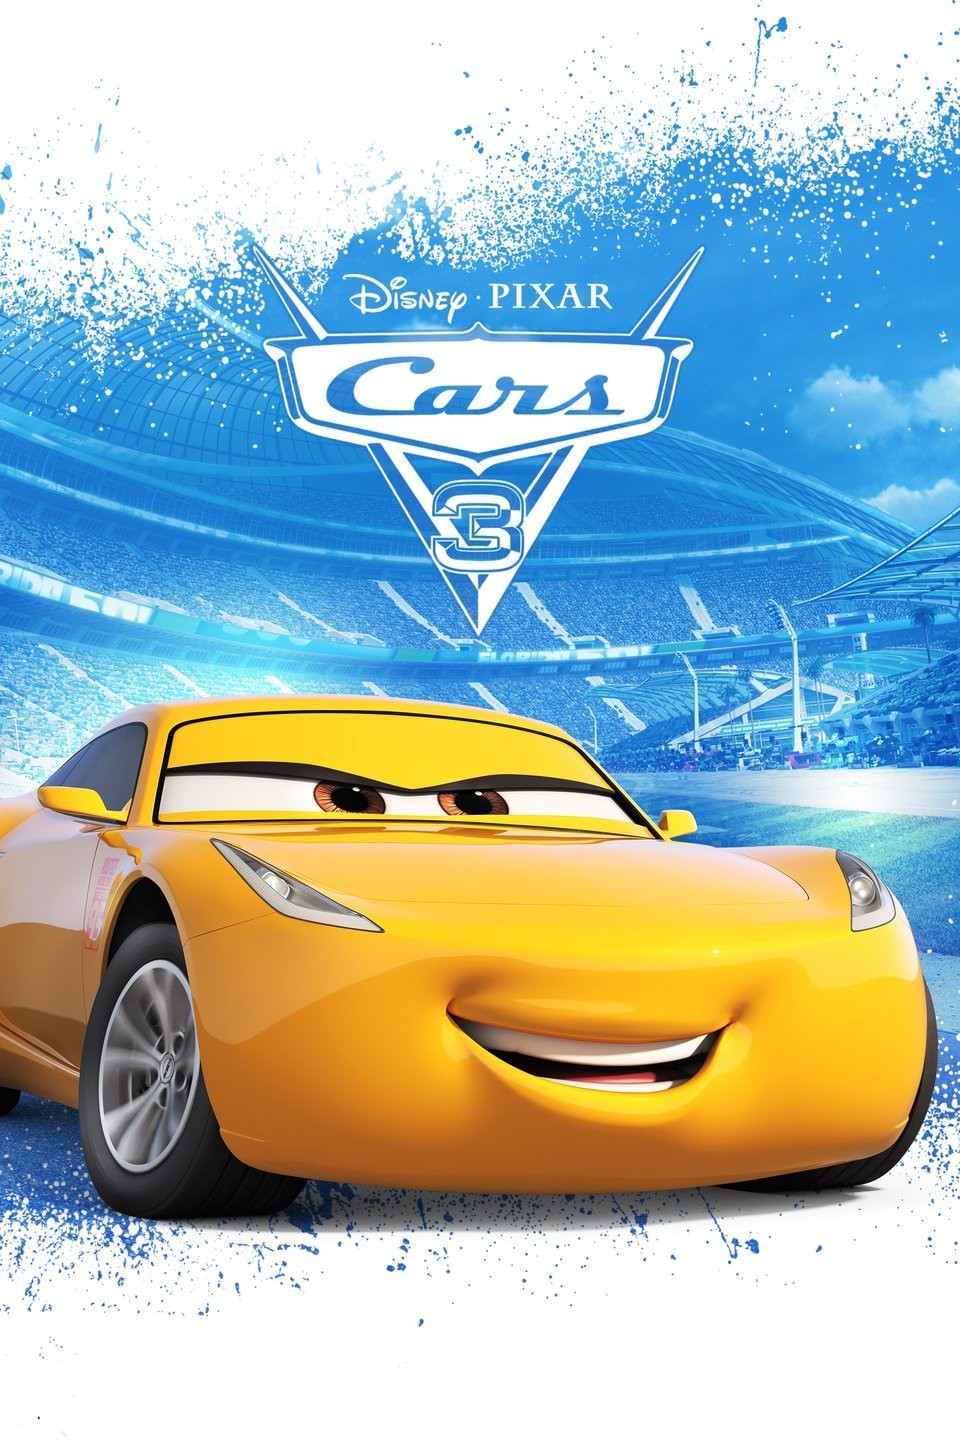 Cars 3' Teaser Posters 'Crash' Online